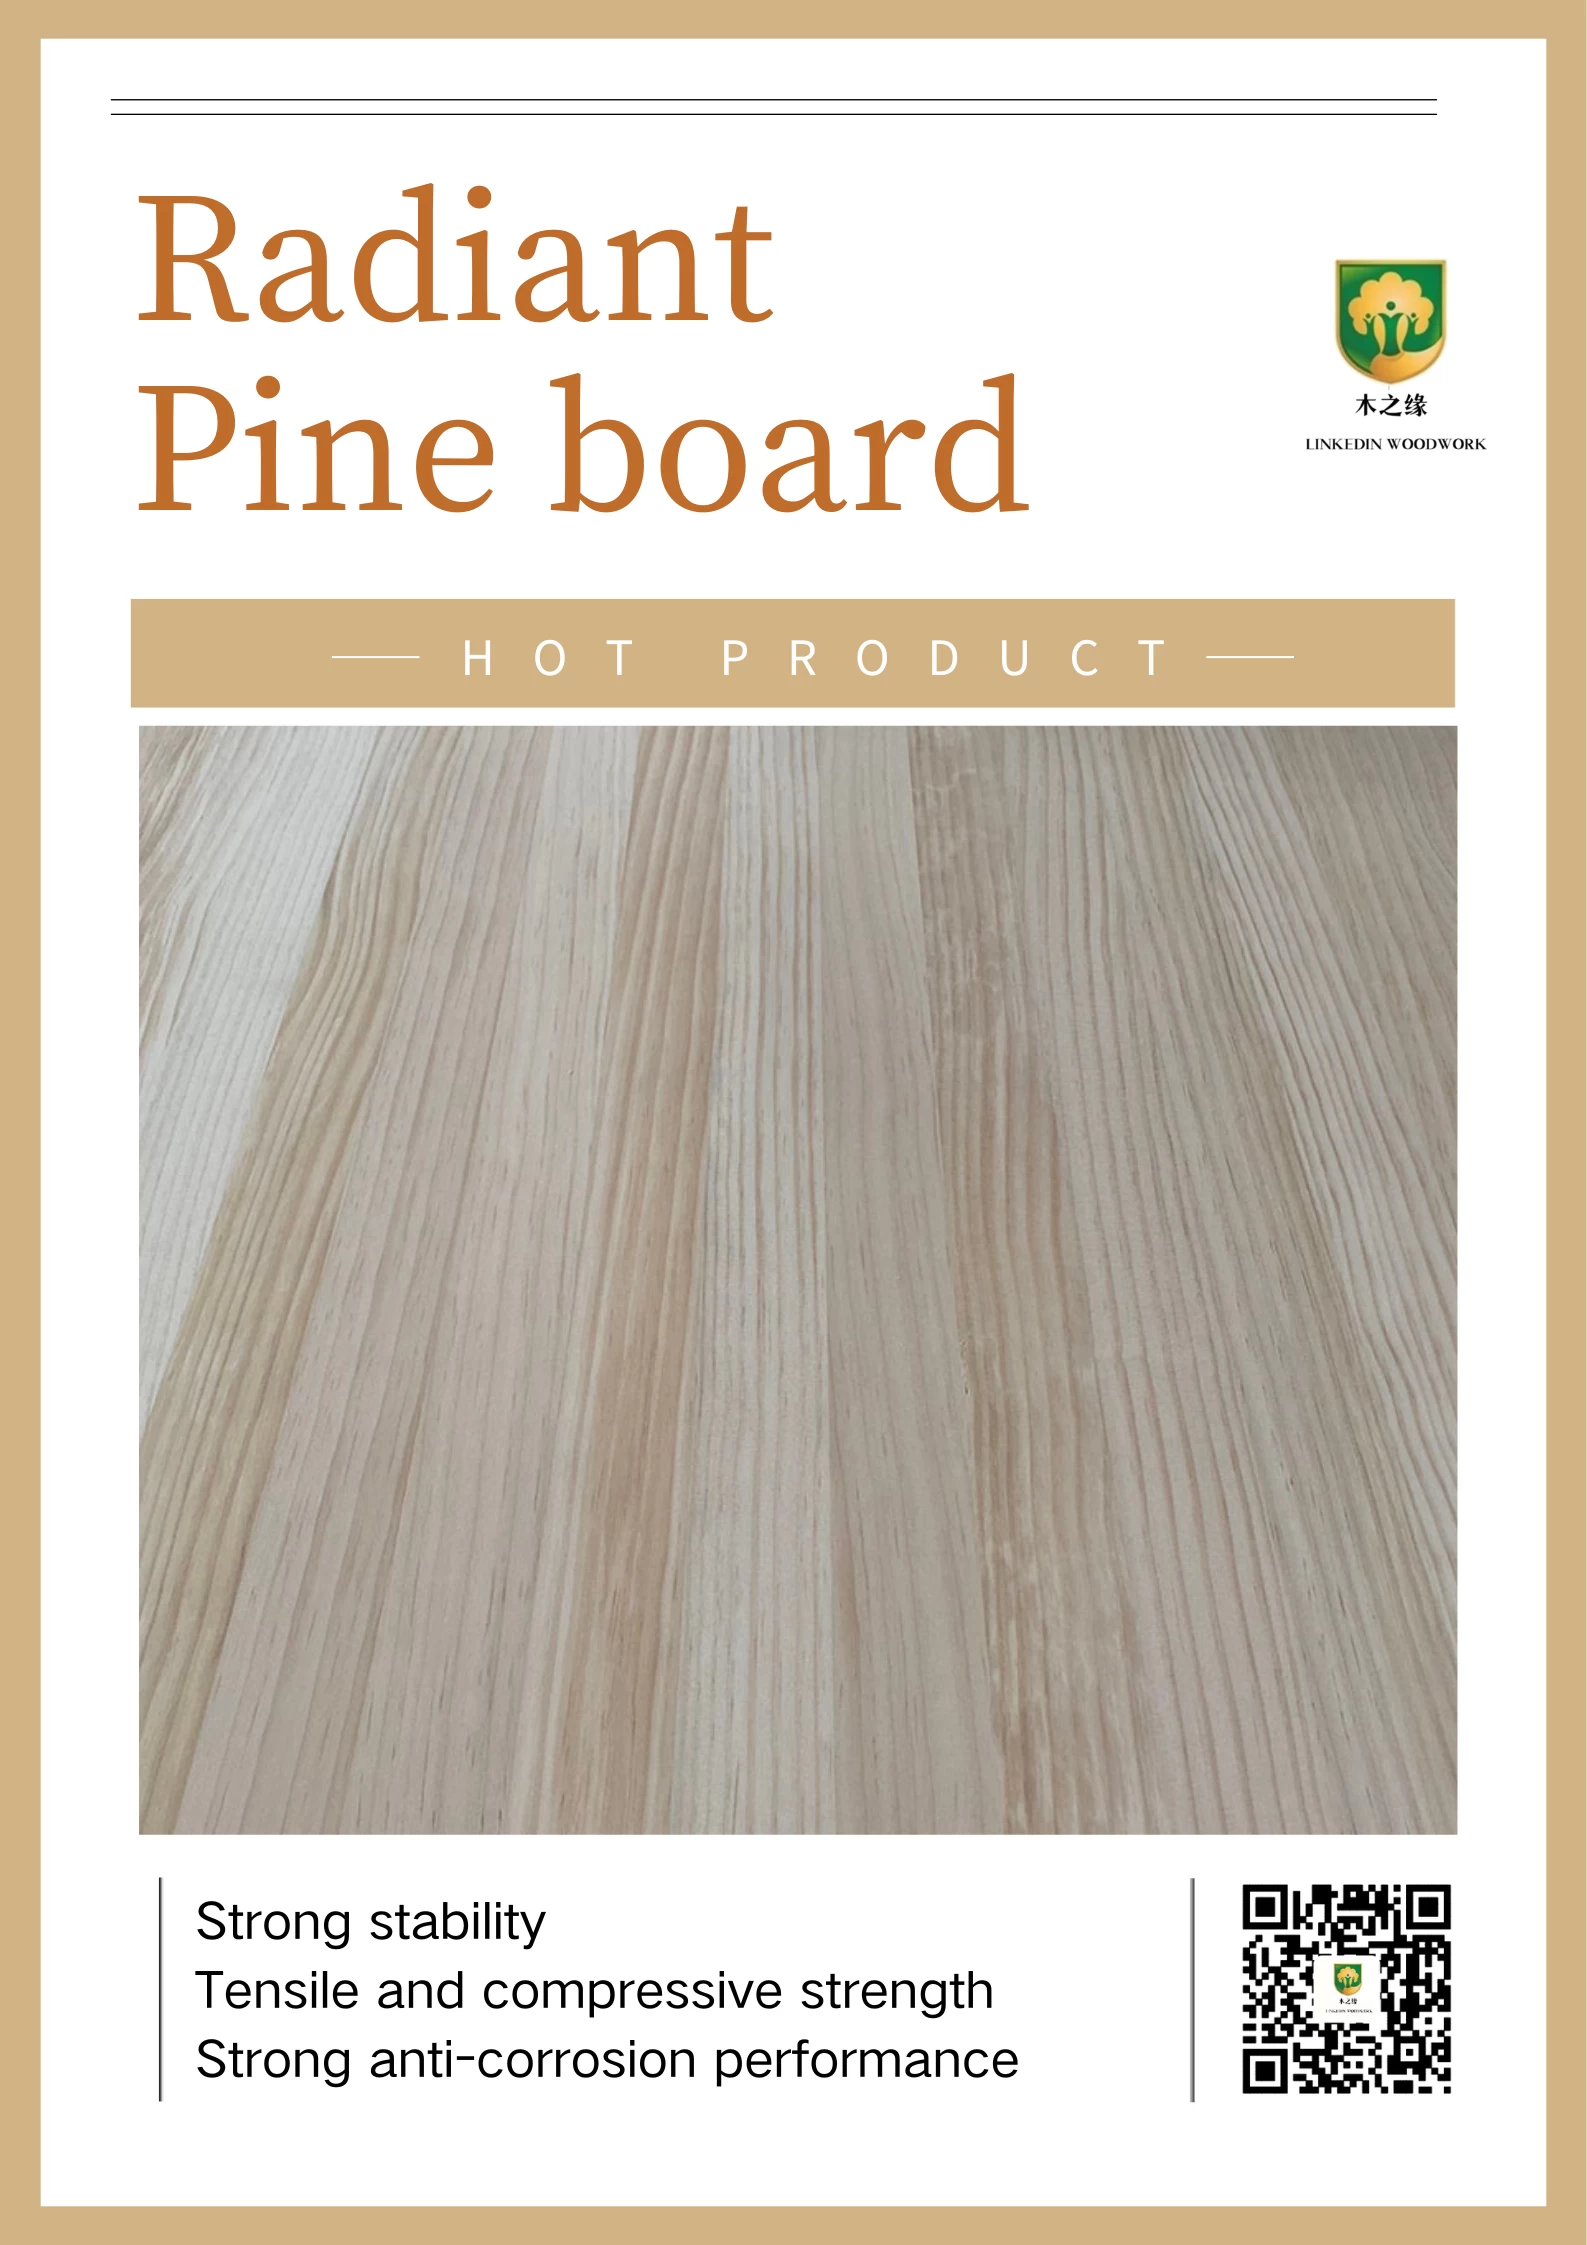 Heetste product – Radiata Pine massief houten planken!